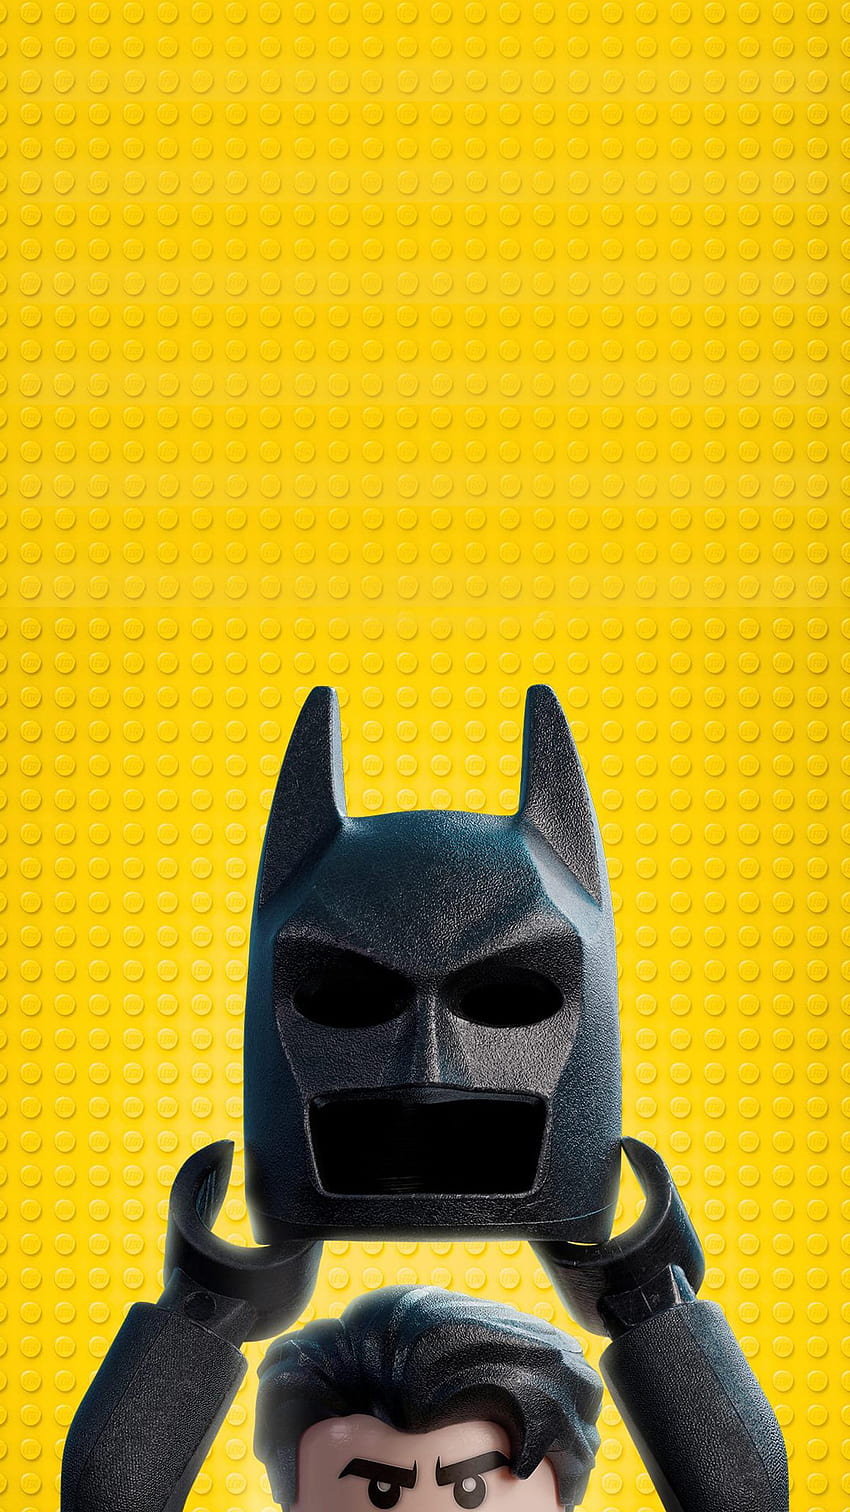 Lego Batman Wallpaper 81 images